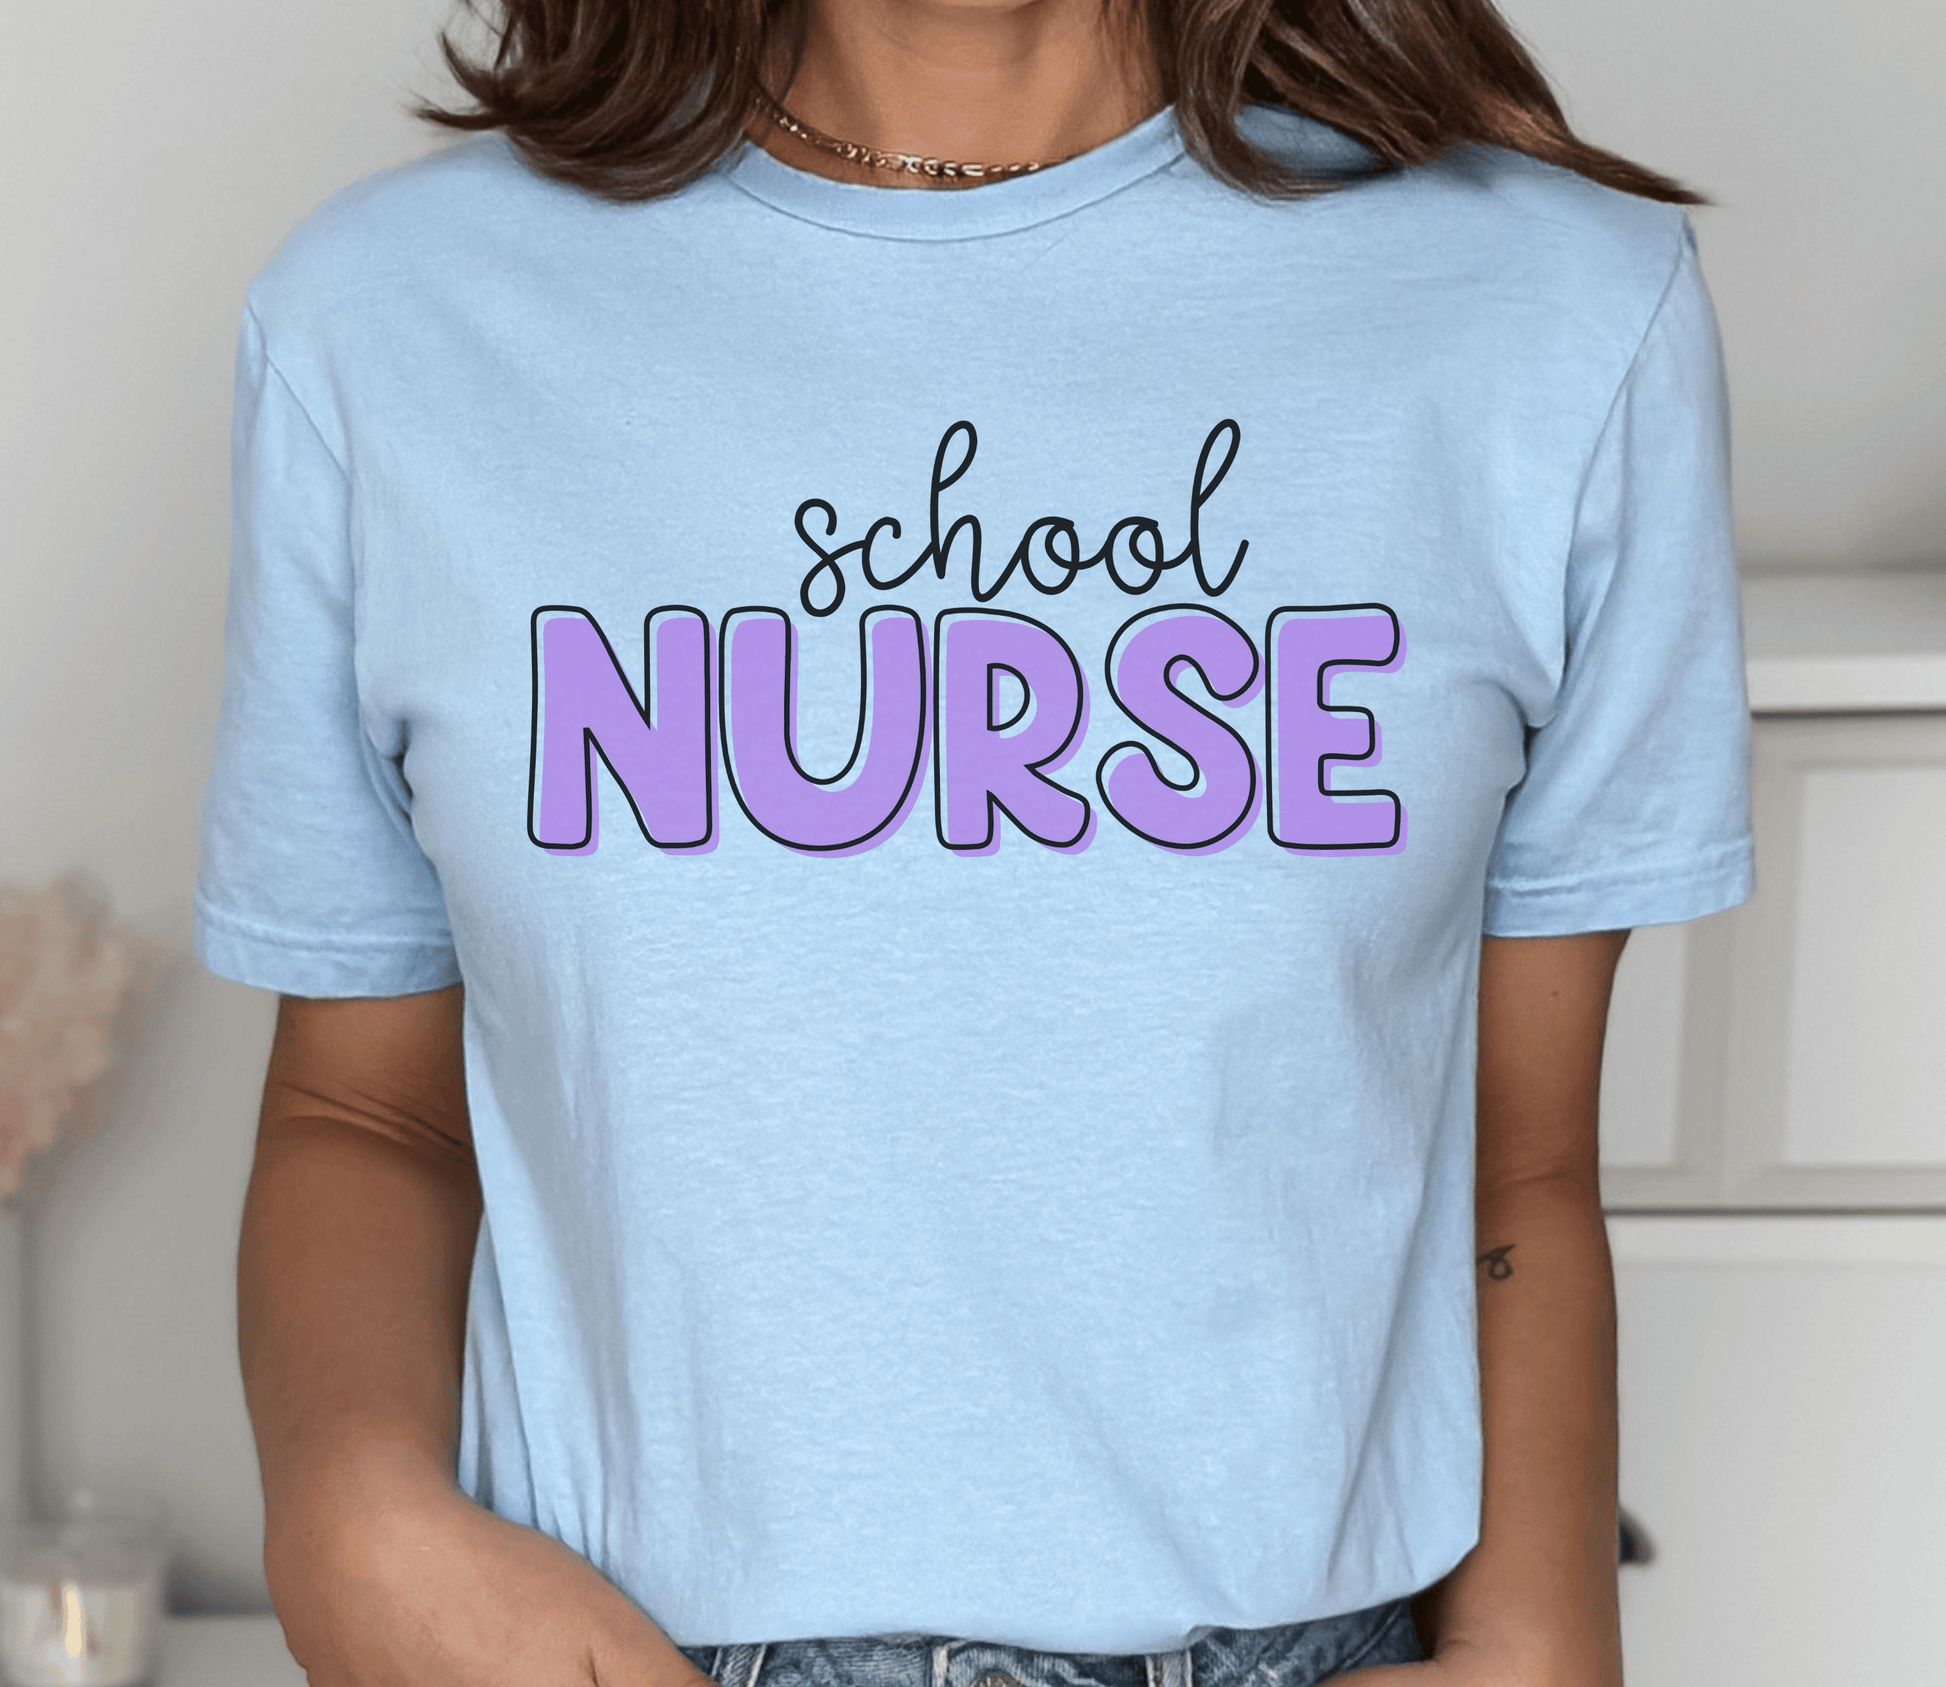 School Nurse Shirt - BentleyBlueCo